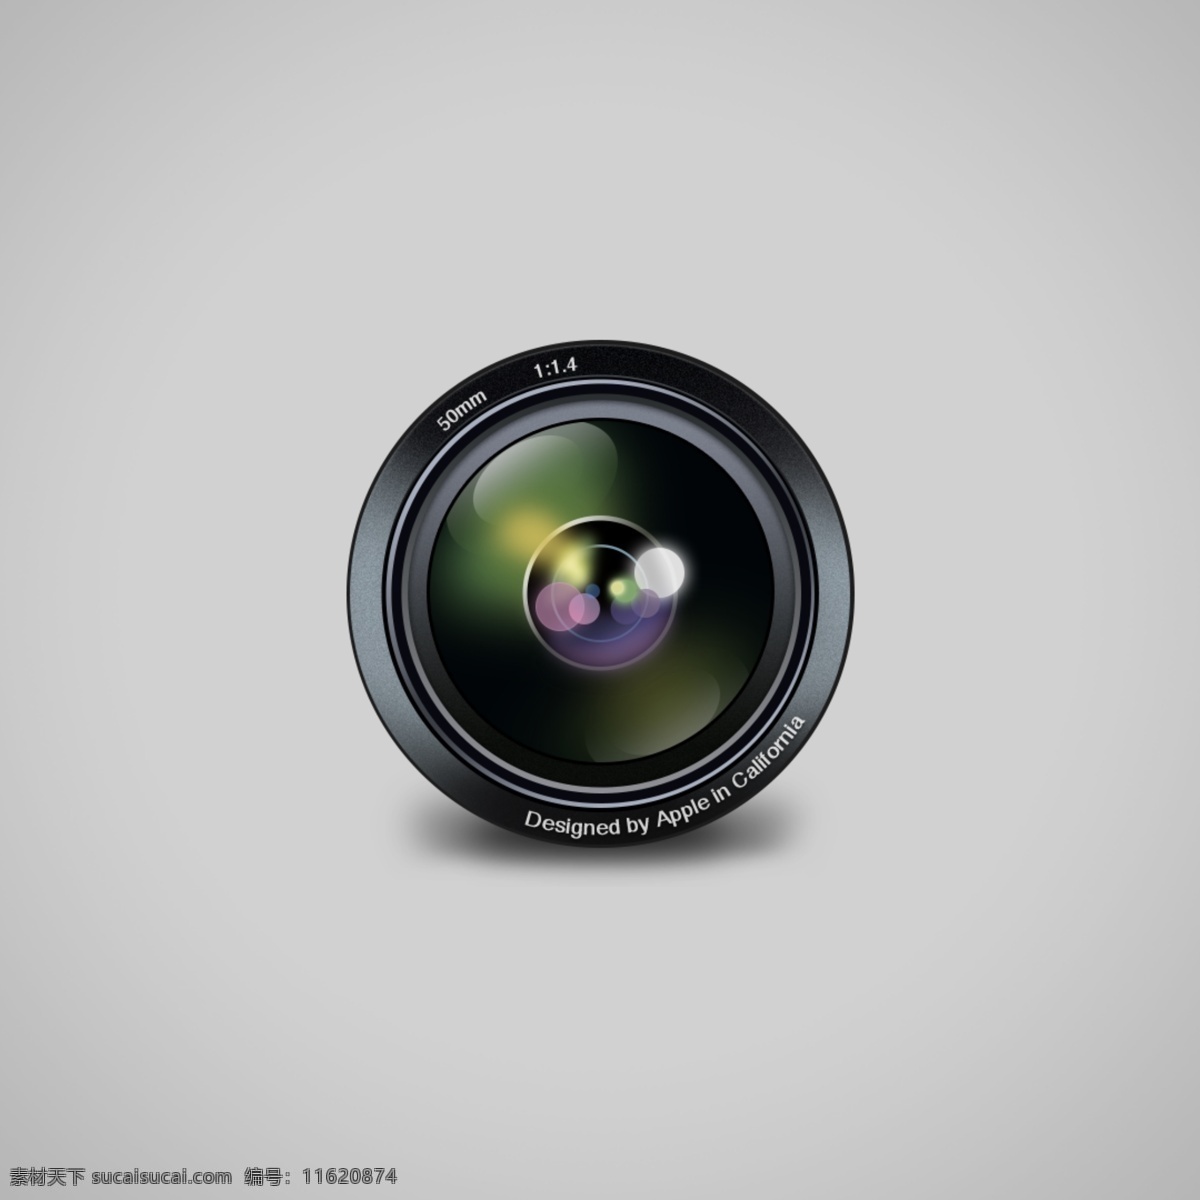 黑色 镜头 icon 图标 相机镜头图标 相机图标 镜头图标 相机 镜头icon icon设计 icon图标 照相机图标